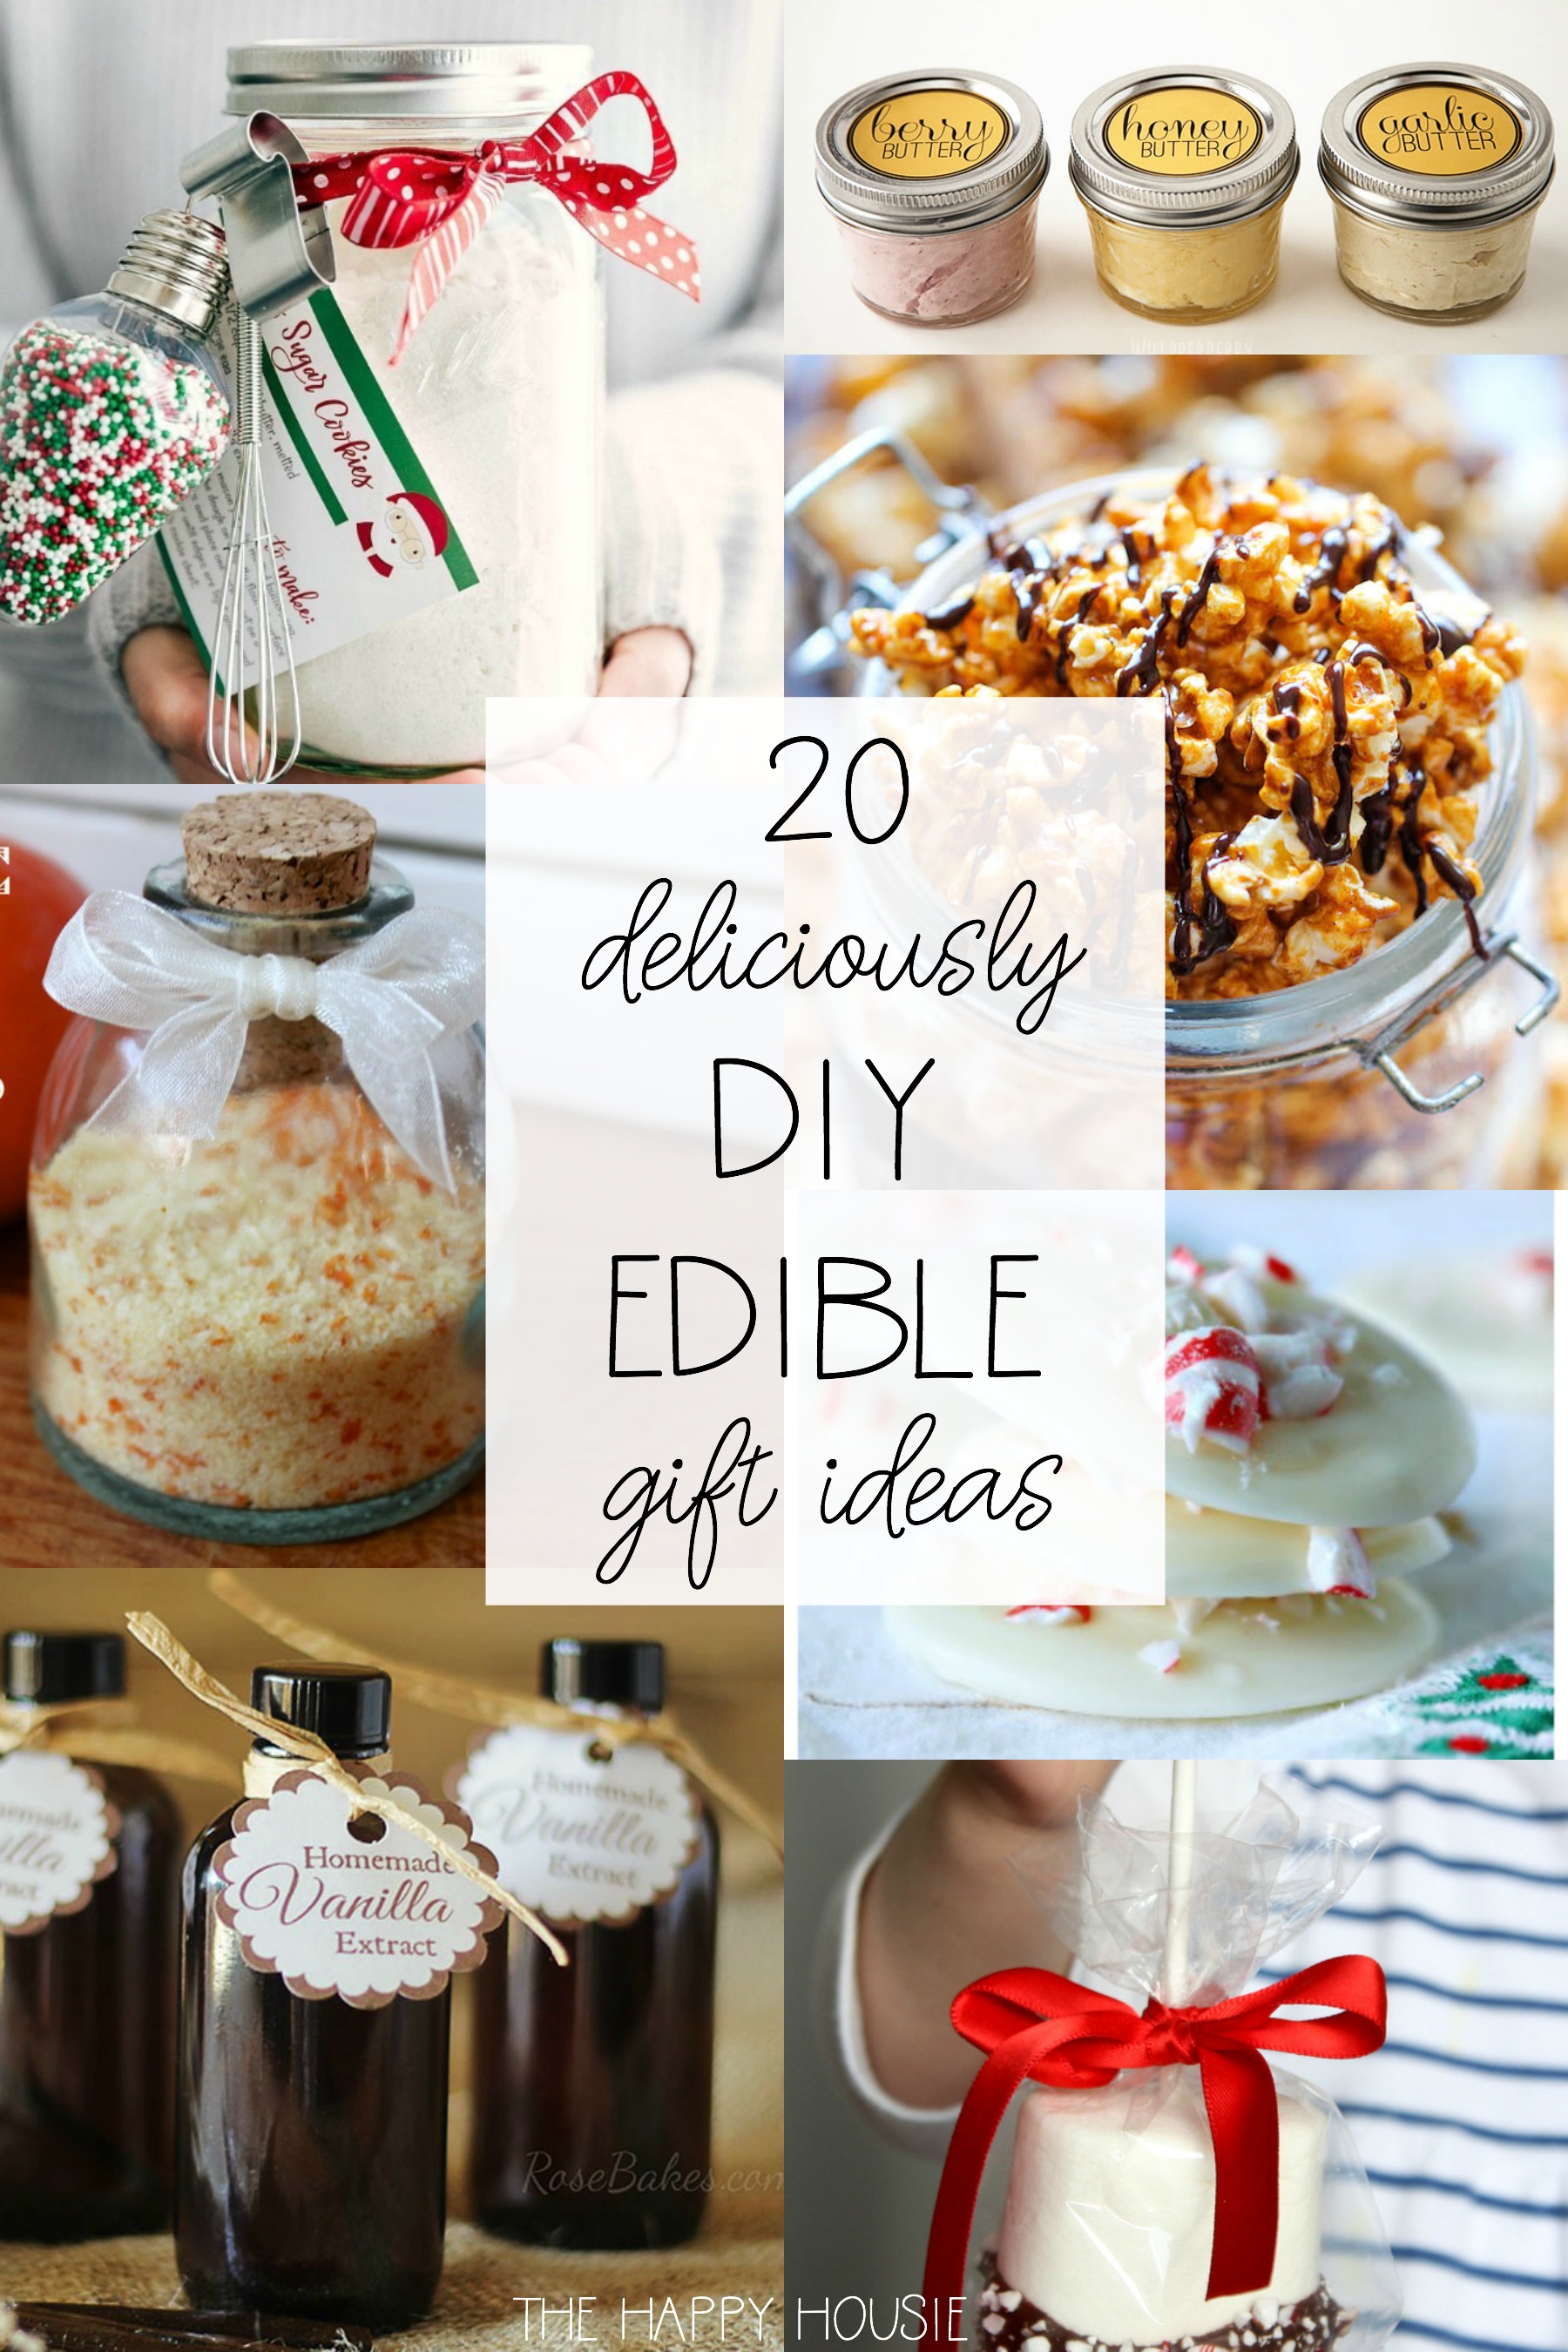 20 Deliciously DIY Edible Gift Ideas poster.